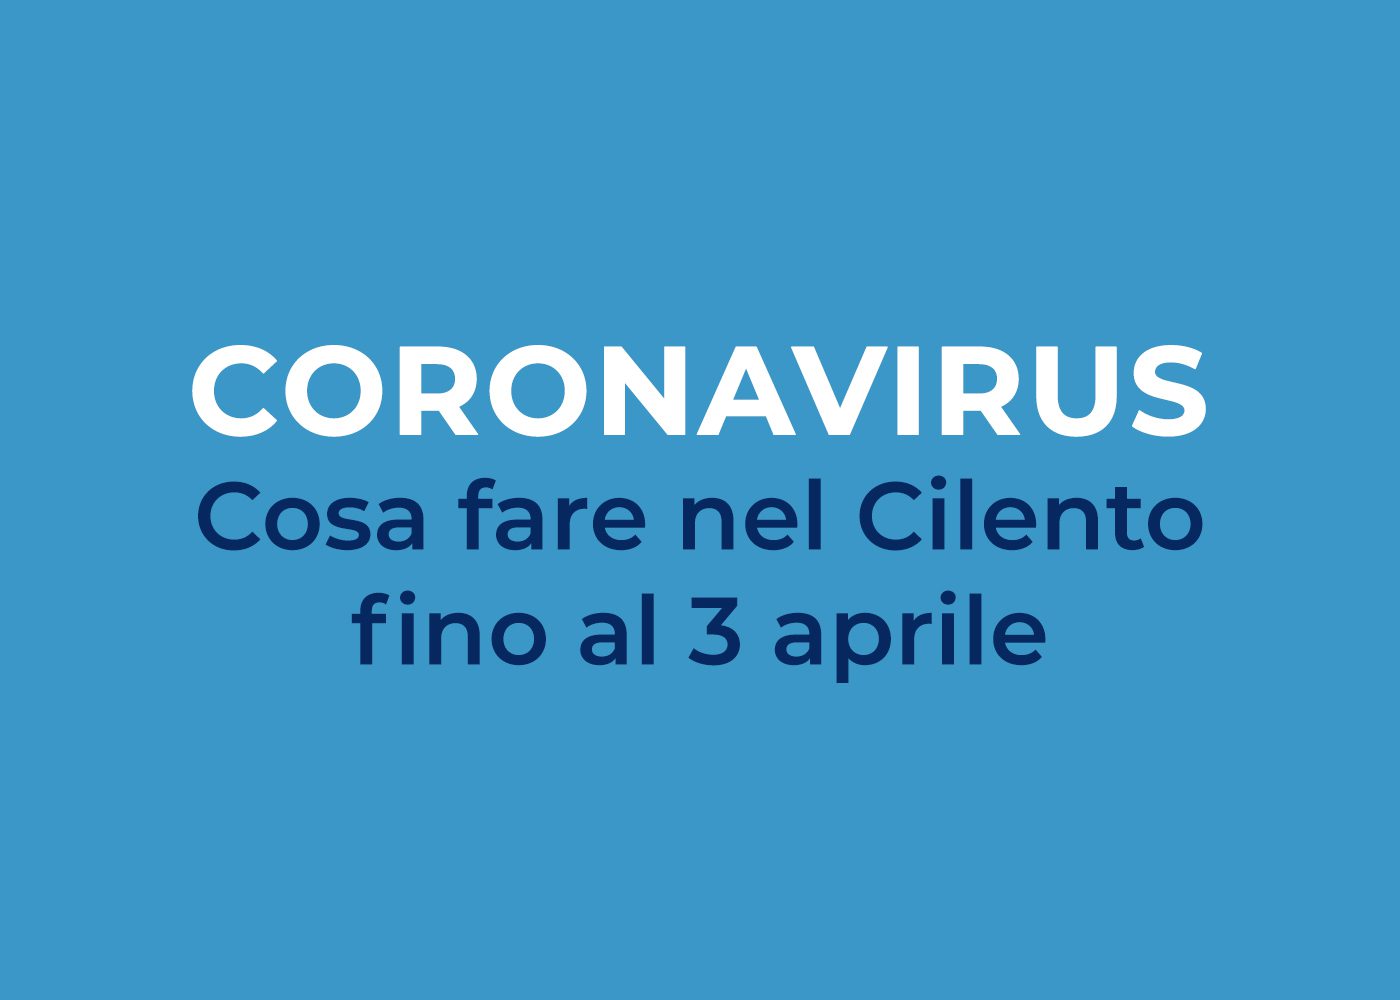 Coronavirus: cosa fare e cosa non fare nel Cilento fino al 3 aprile